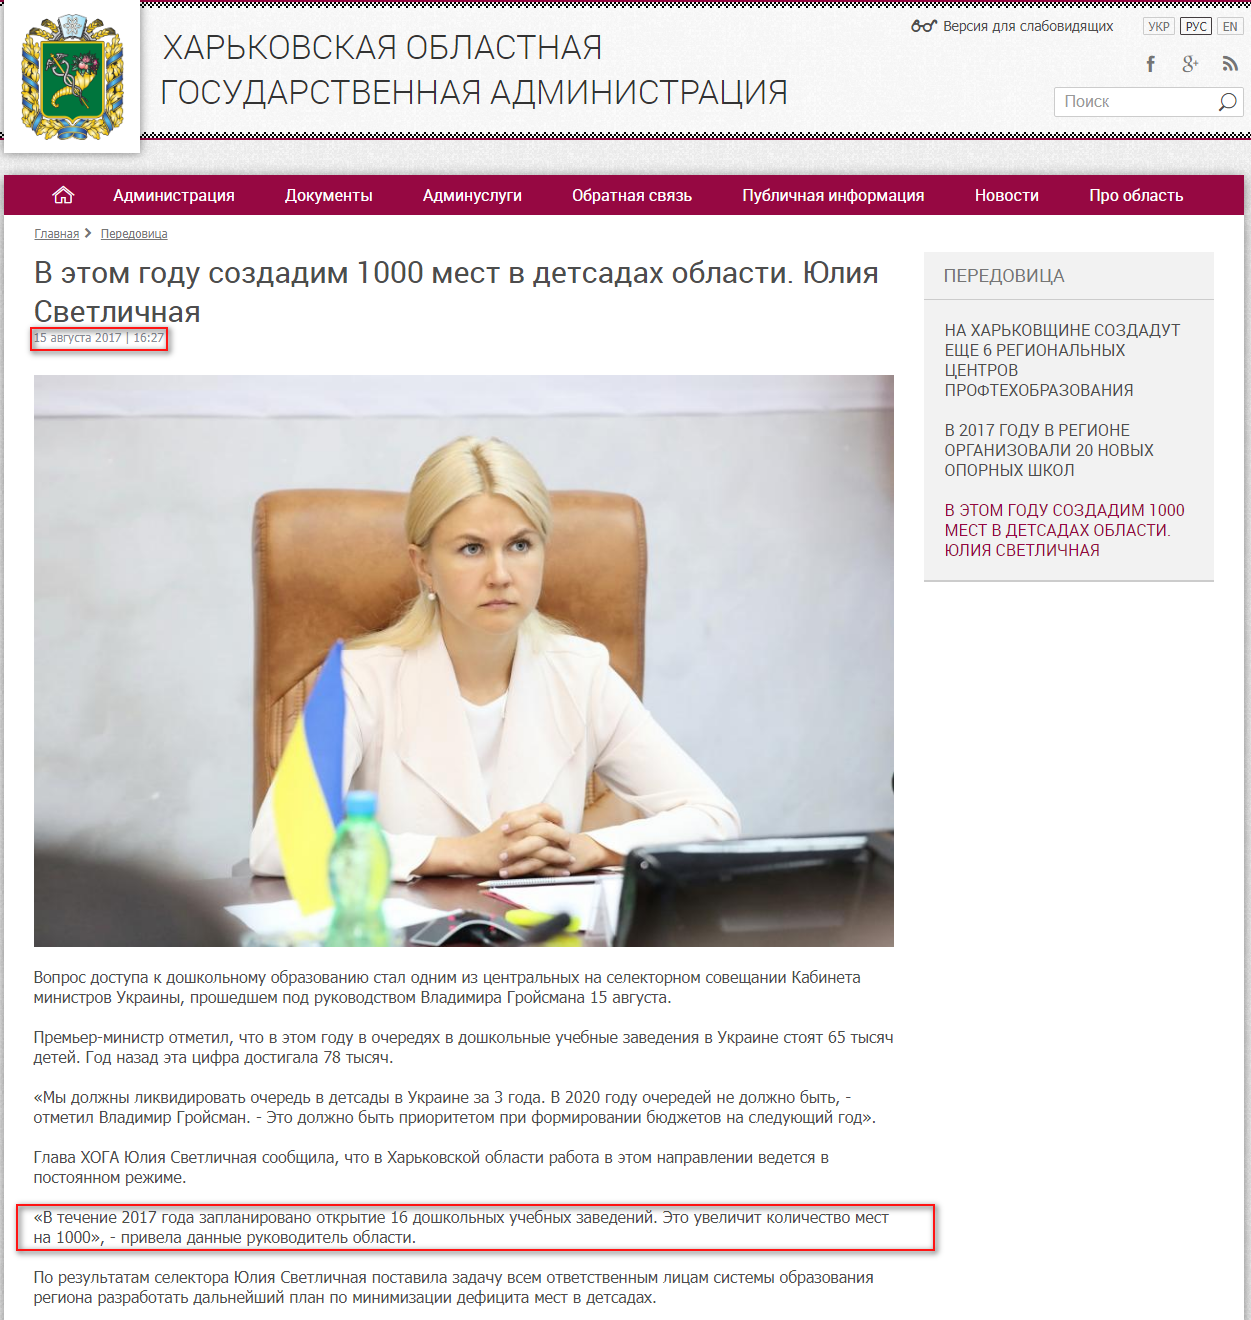 http://kharkivoda.gov.ua/ru/36/88022